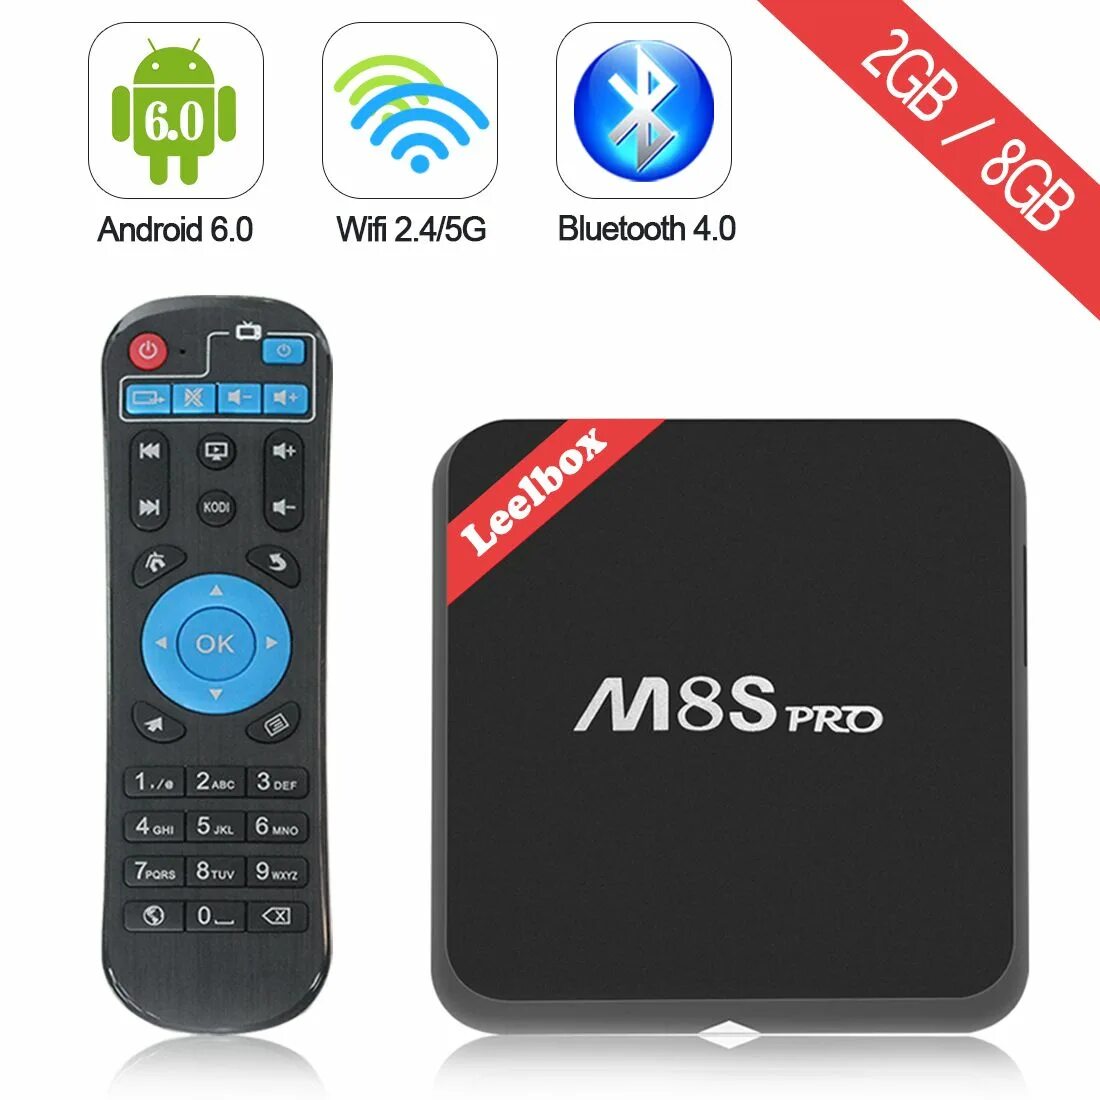 ТВ бокс m8s Pro. ТВ бокс андроид. Android TV Box. Android TV Box MXQ Leelbox.